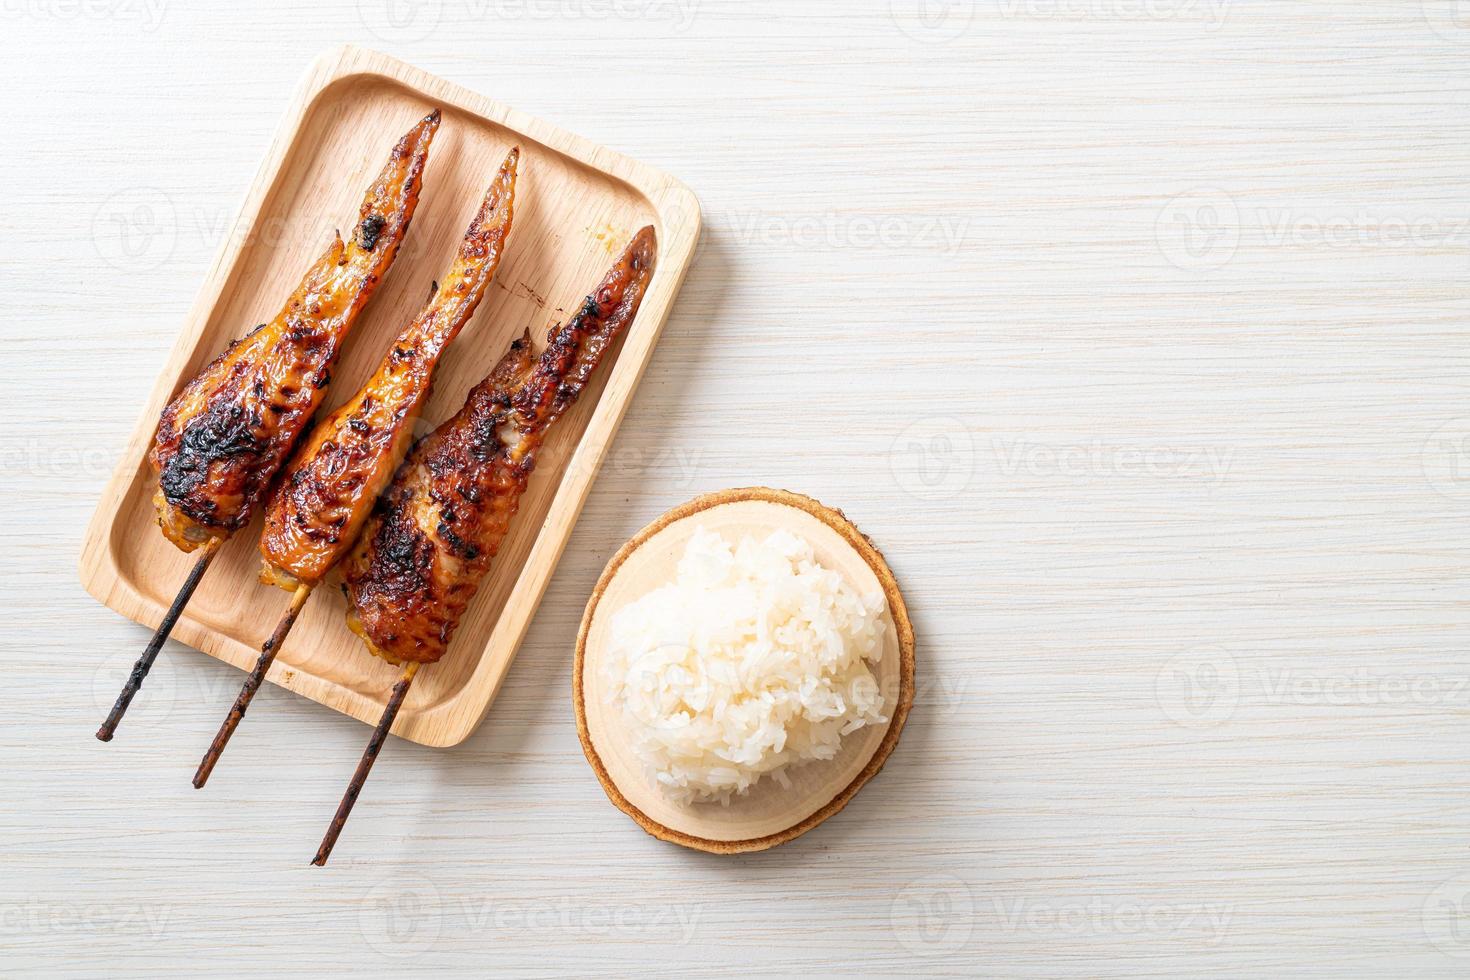 grillad eller grillad kycklingvingespett med klibbigt ris foto